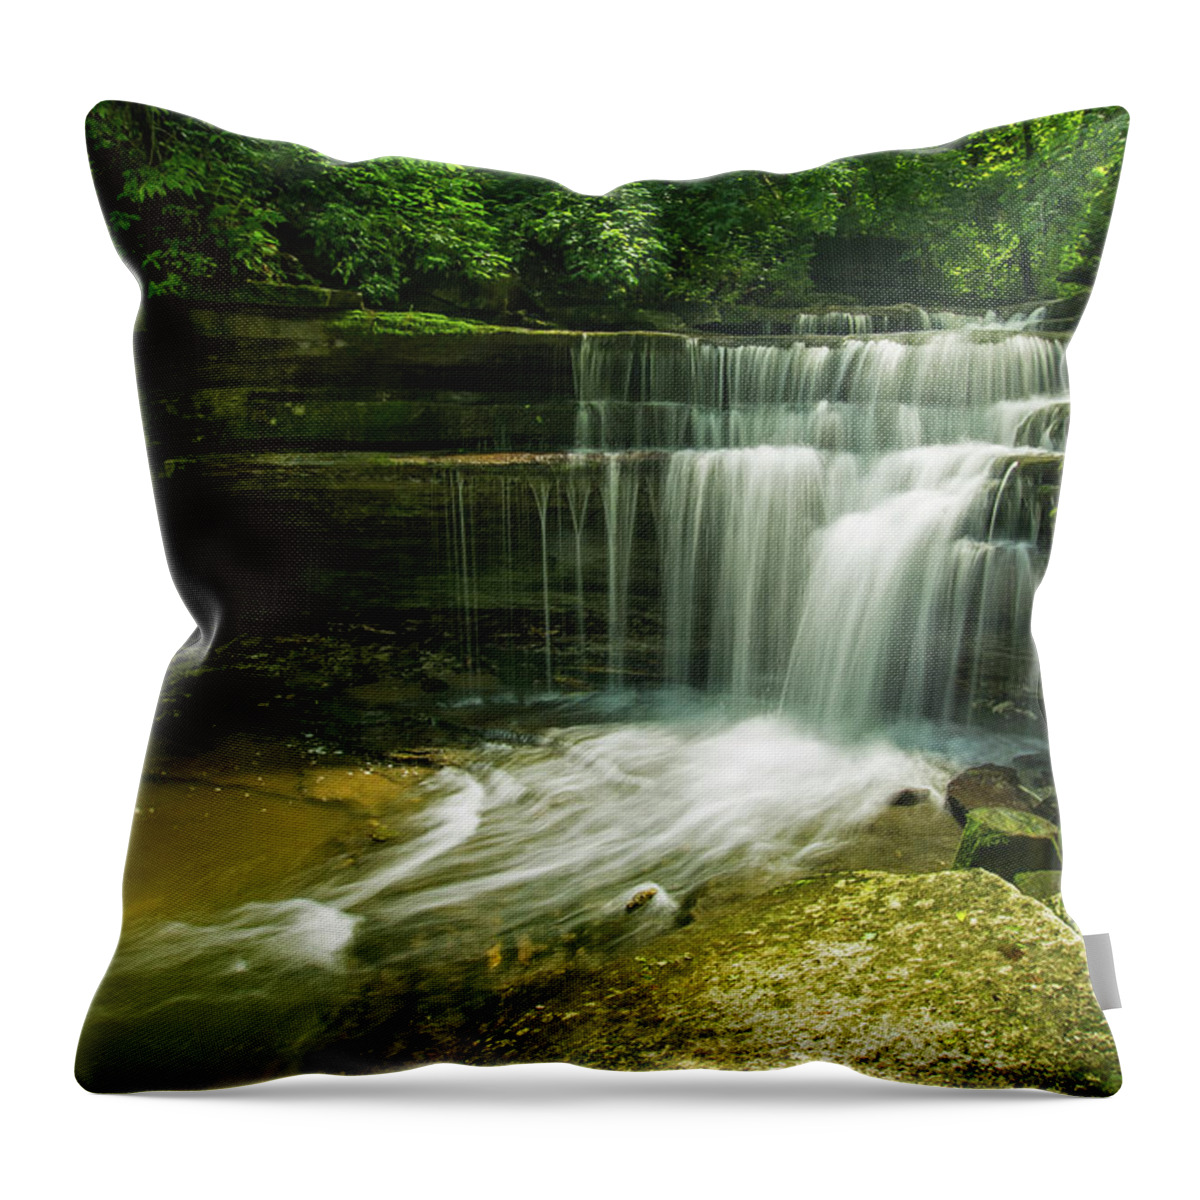 Waterfalls Throw Pillow featuring the photograph Kentucky waterfalls by Ulrich Burkhalter